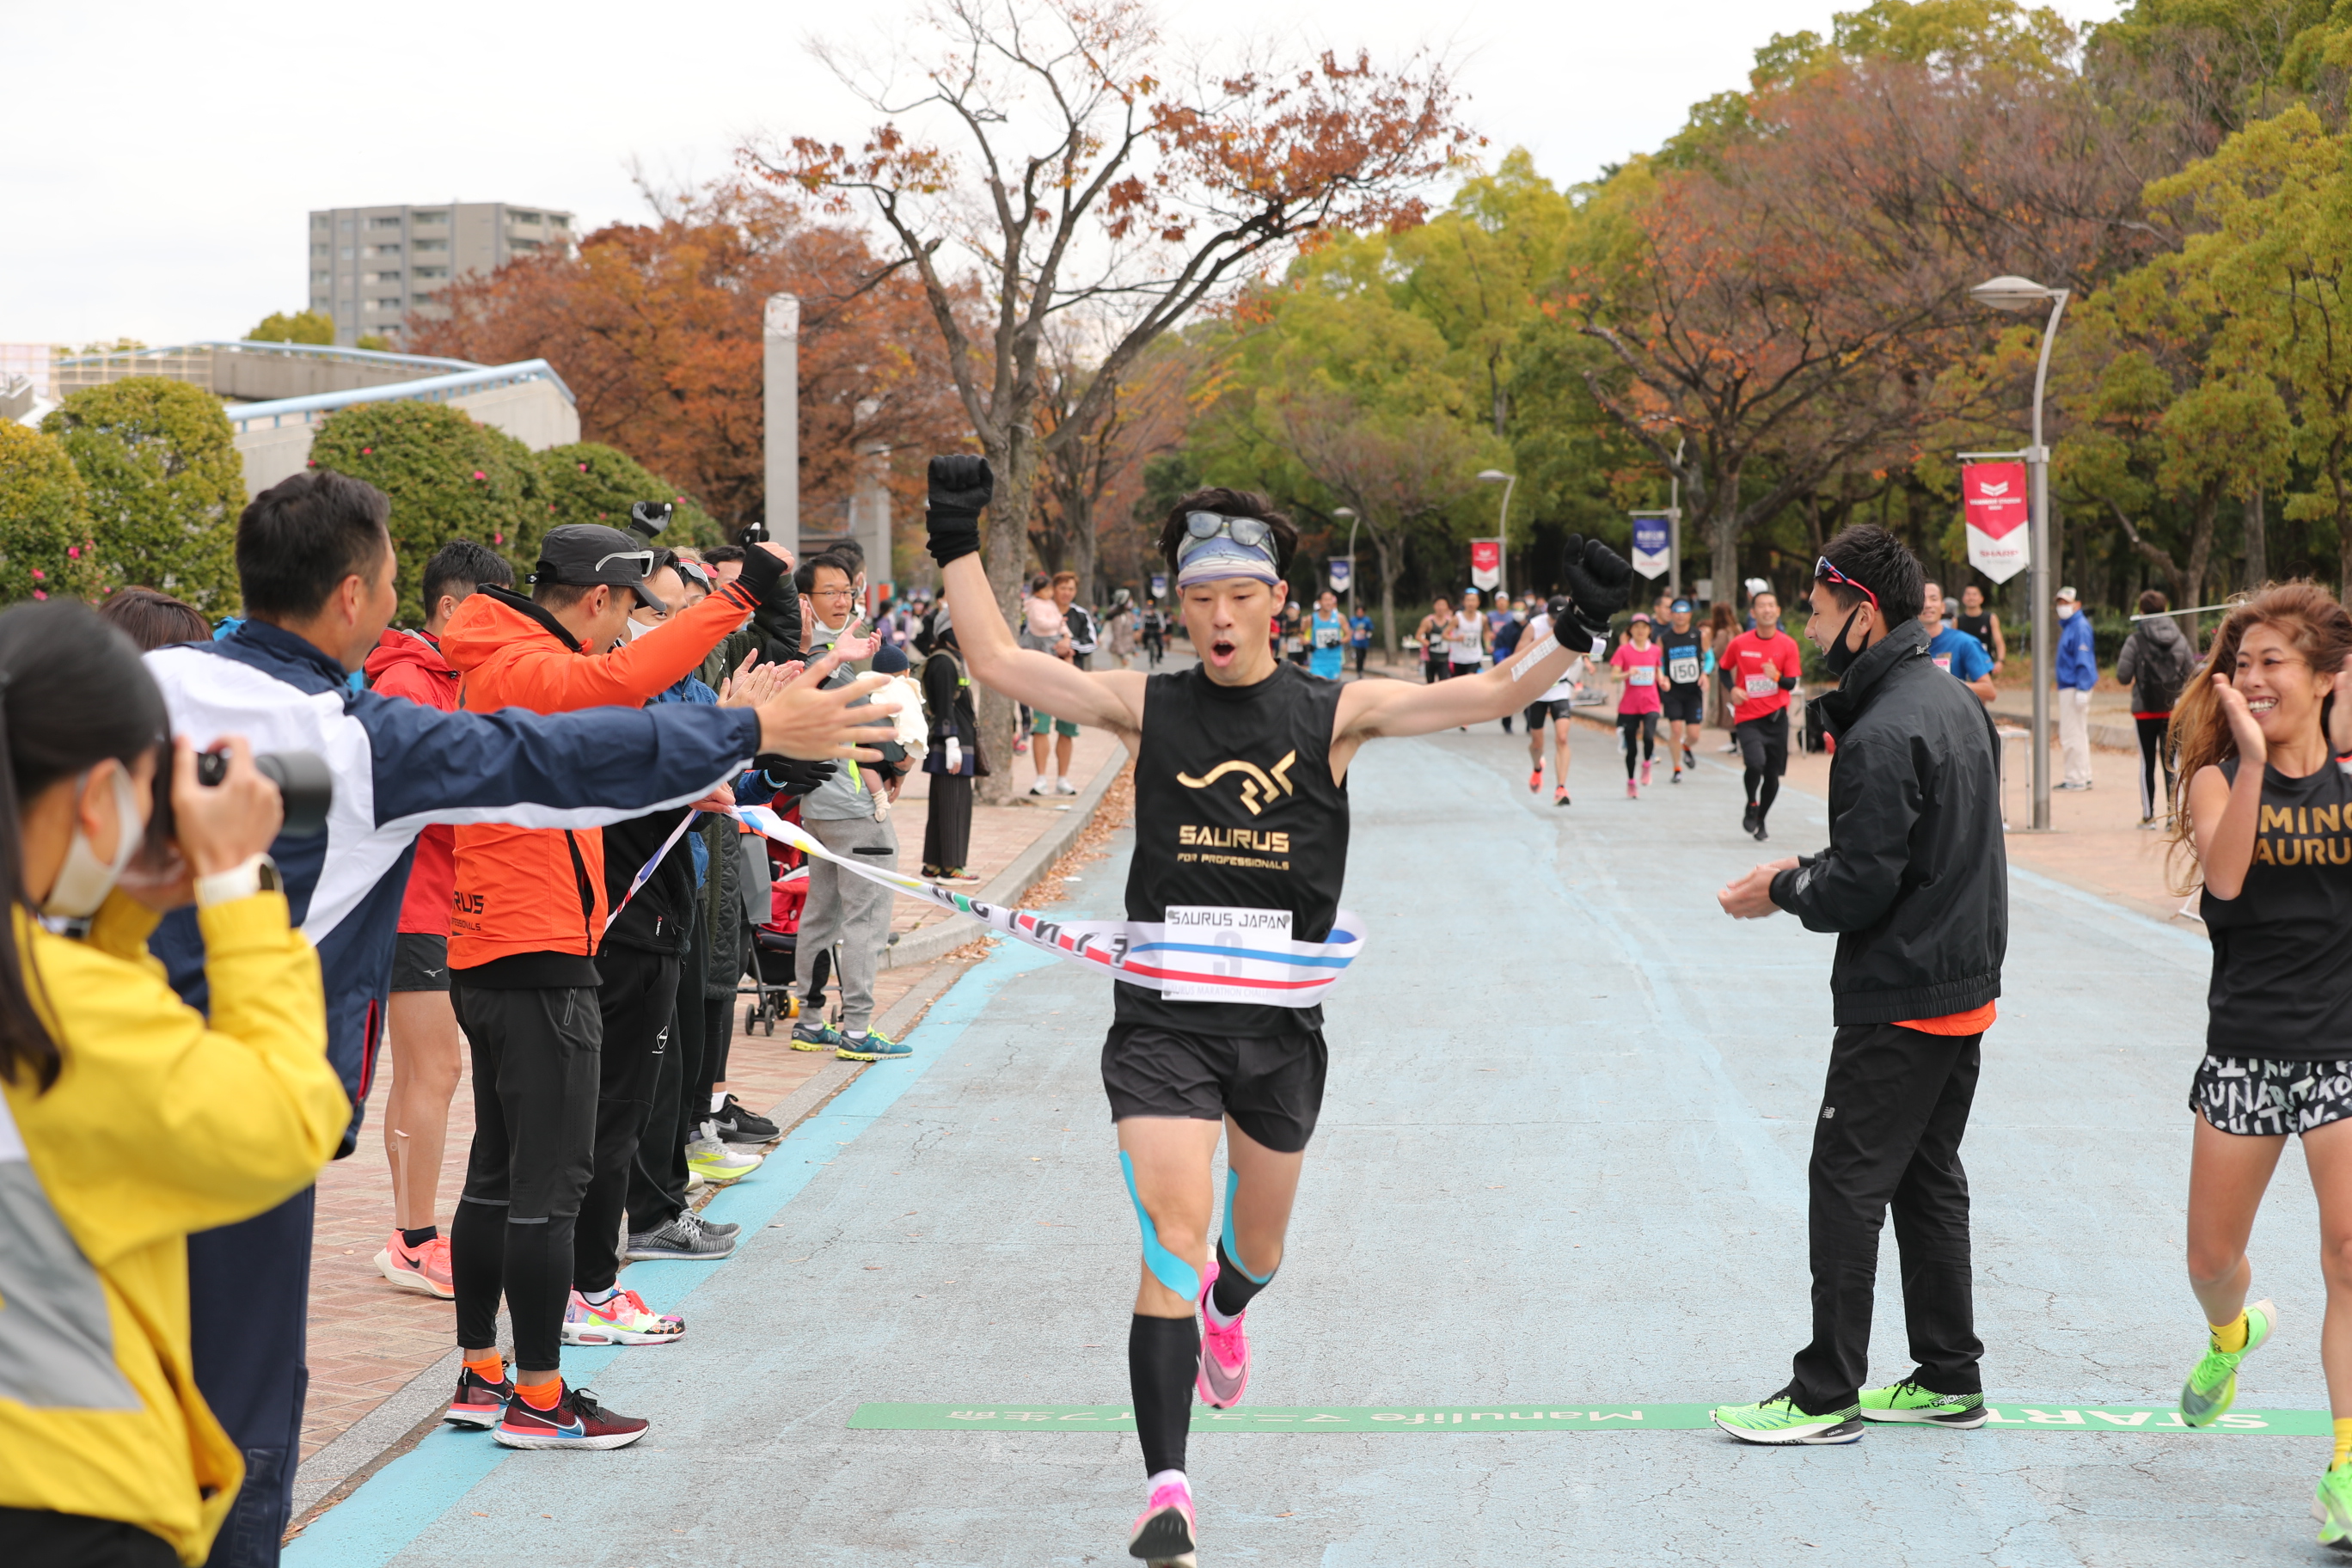 アミノ酸サプリメントのsaurus Japan主催 Saurusマラソンチャレンジ本格始動 5月16日大阪で開催 Saurus Japan株式会社のプレスリリース